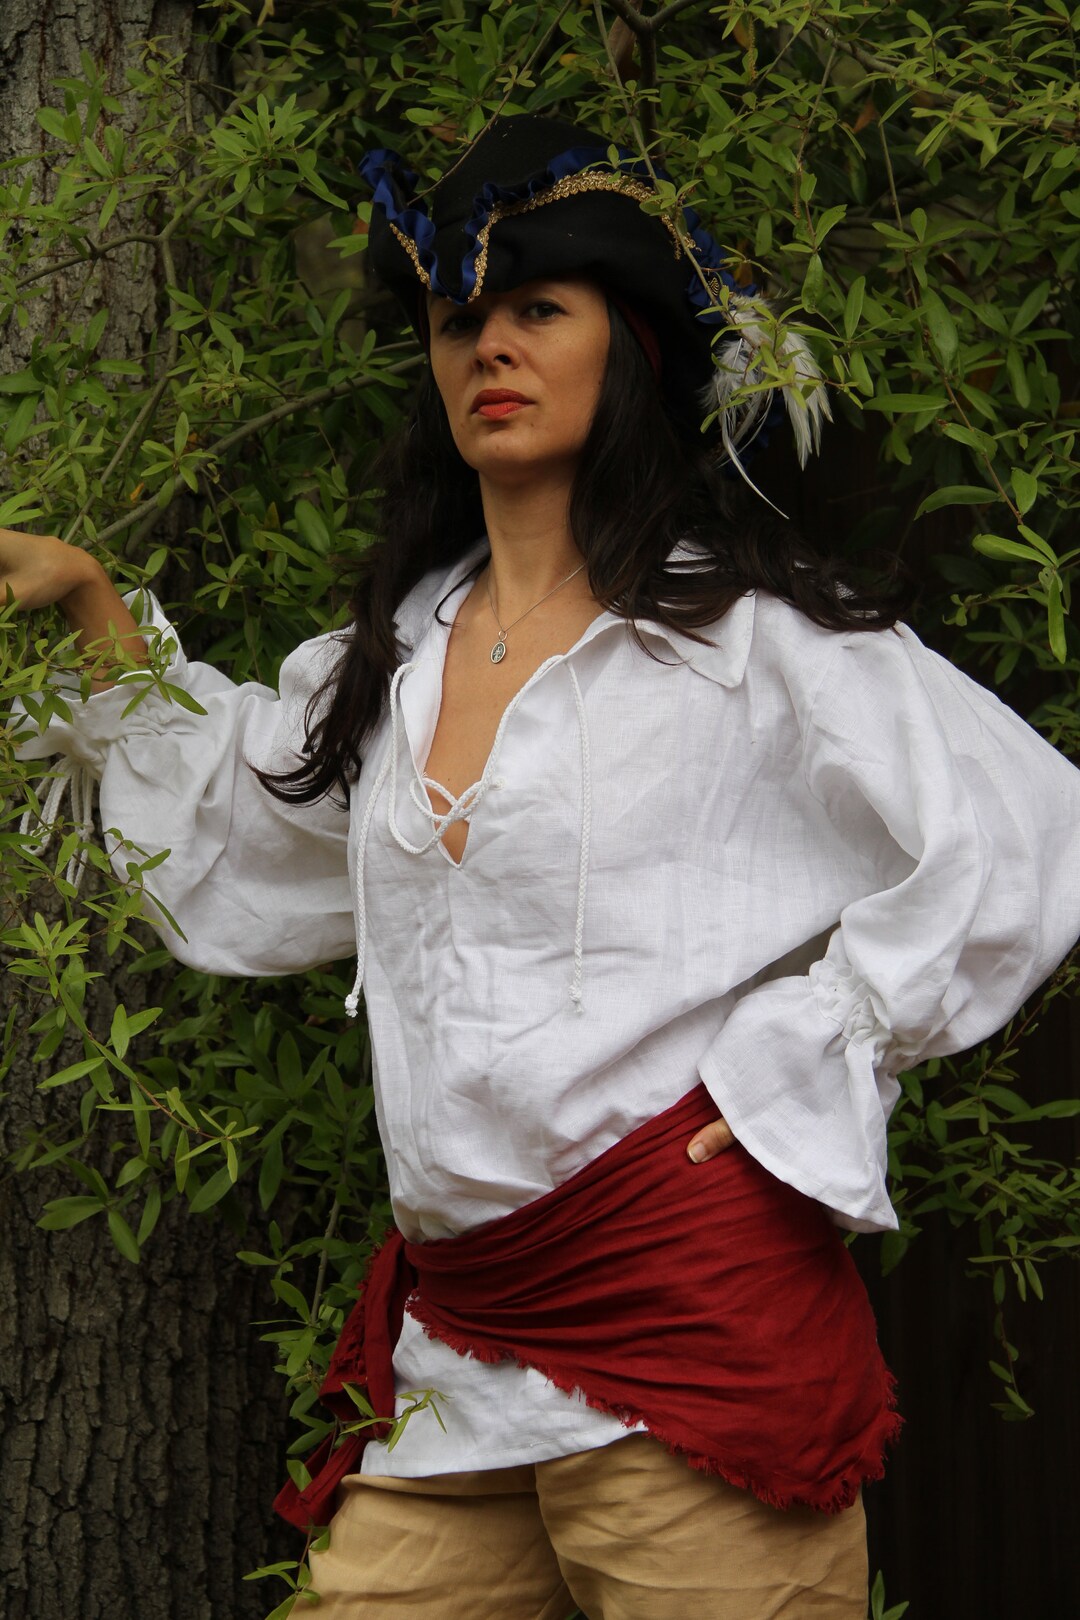 Costume da pirata da donna – costume da barba nera con camicia, pantaloni,  bandana, cintura, copristivali e cintura in vita.